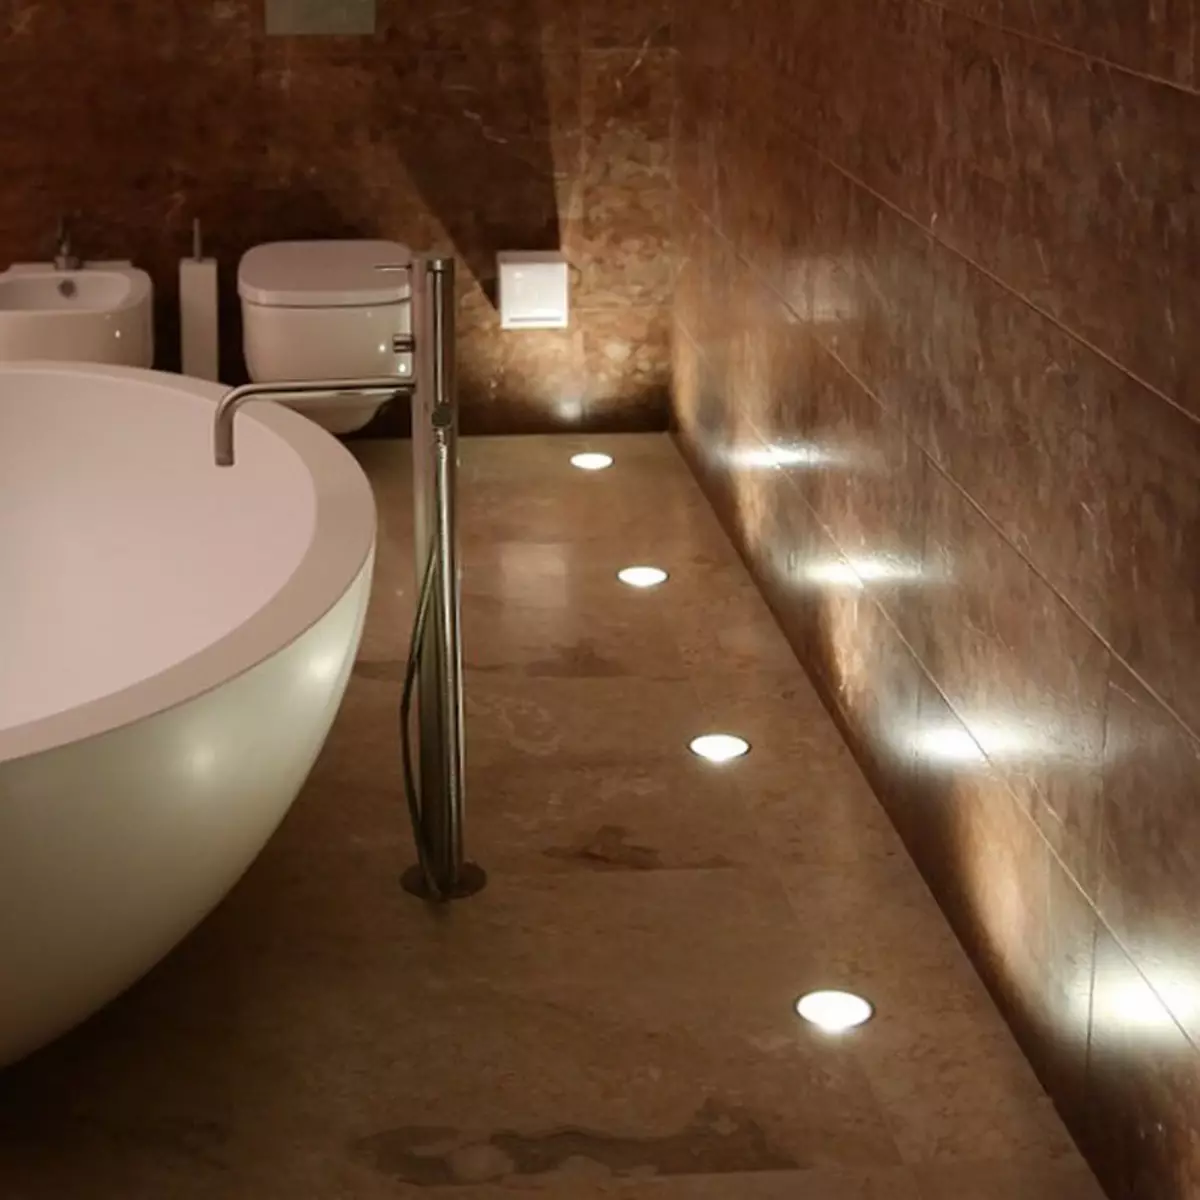 ရေချိုးခန်းအတွက်နံရံမီးခွက်များ - LED နှင့်အခြားအစိုဓာတ်ကာကွယ်စောင့်ရှောက်ရေးမီးအိမ်နံရံပေါ်ရှိအခြားအစိုဓာတ်ကာကွယ်စောင့်ရှောက်မှုမီးခွက်များ။ အစိုဓာတ်ကို - အထောက်အထားမီးခွက်များ၏ကာကွယ်စောင့်ရှောက်၏ဒီဂရီ 10130_8